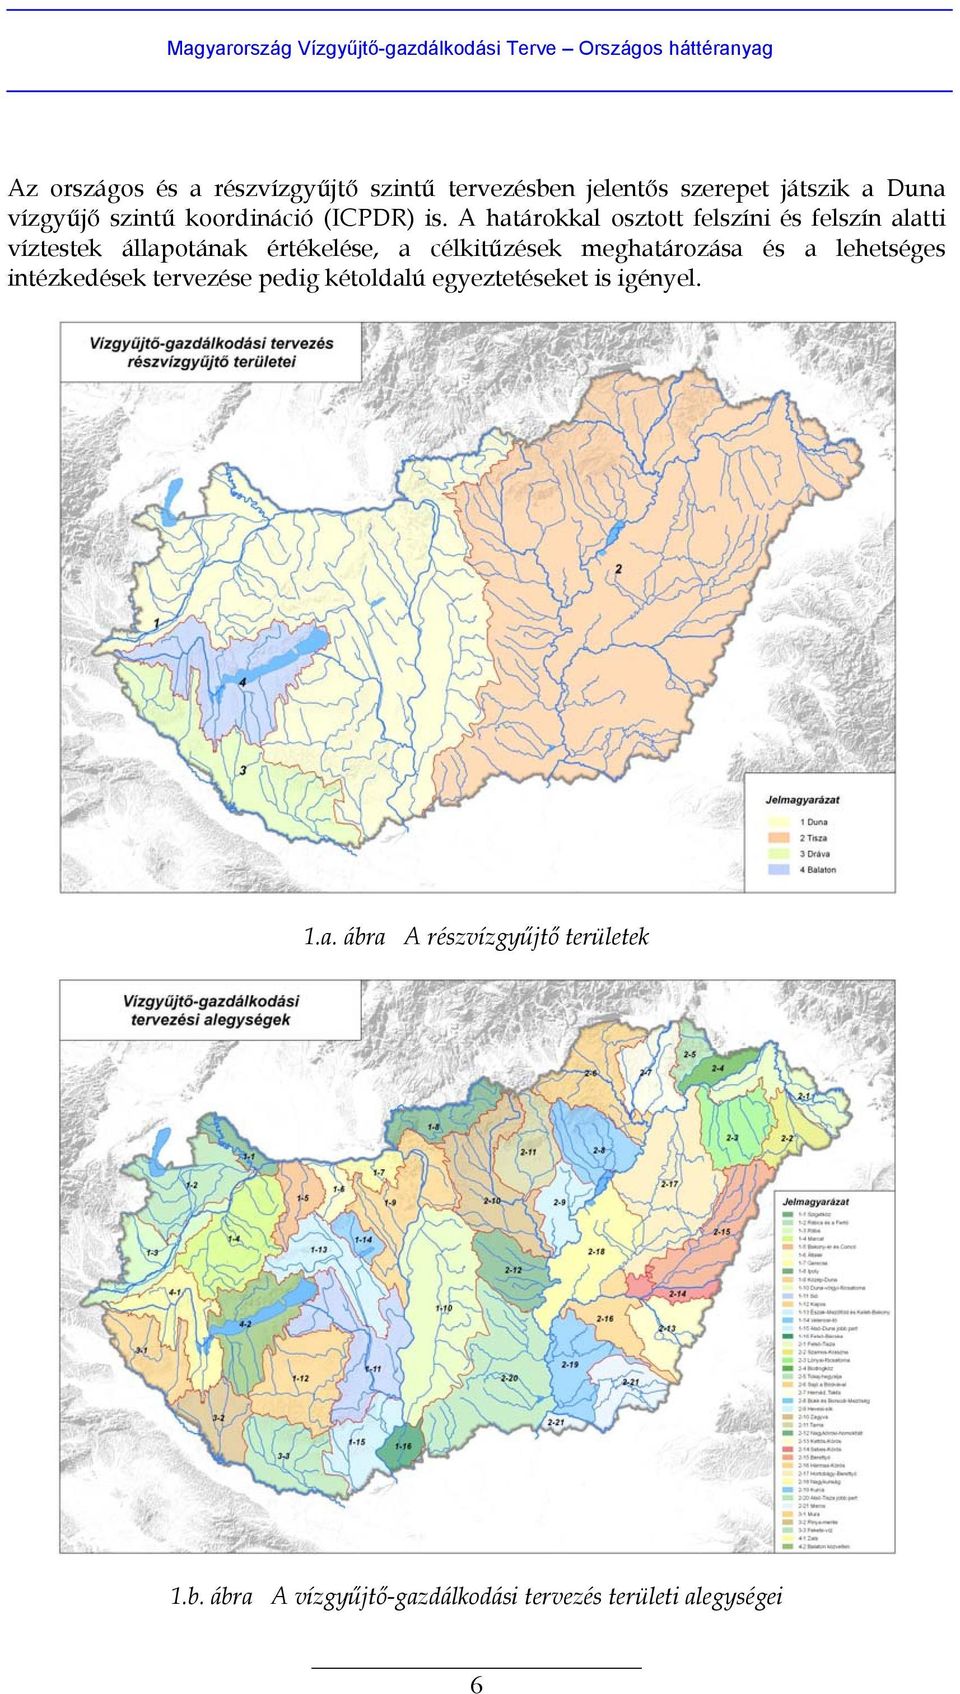 A határokkal osztott felszíni és felszín alatti víztestek állapotának értékelése, a célkitűzések